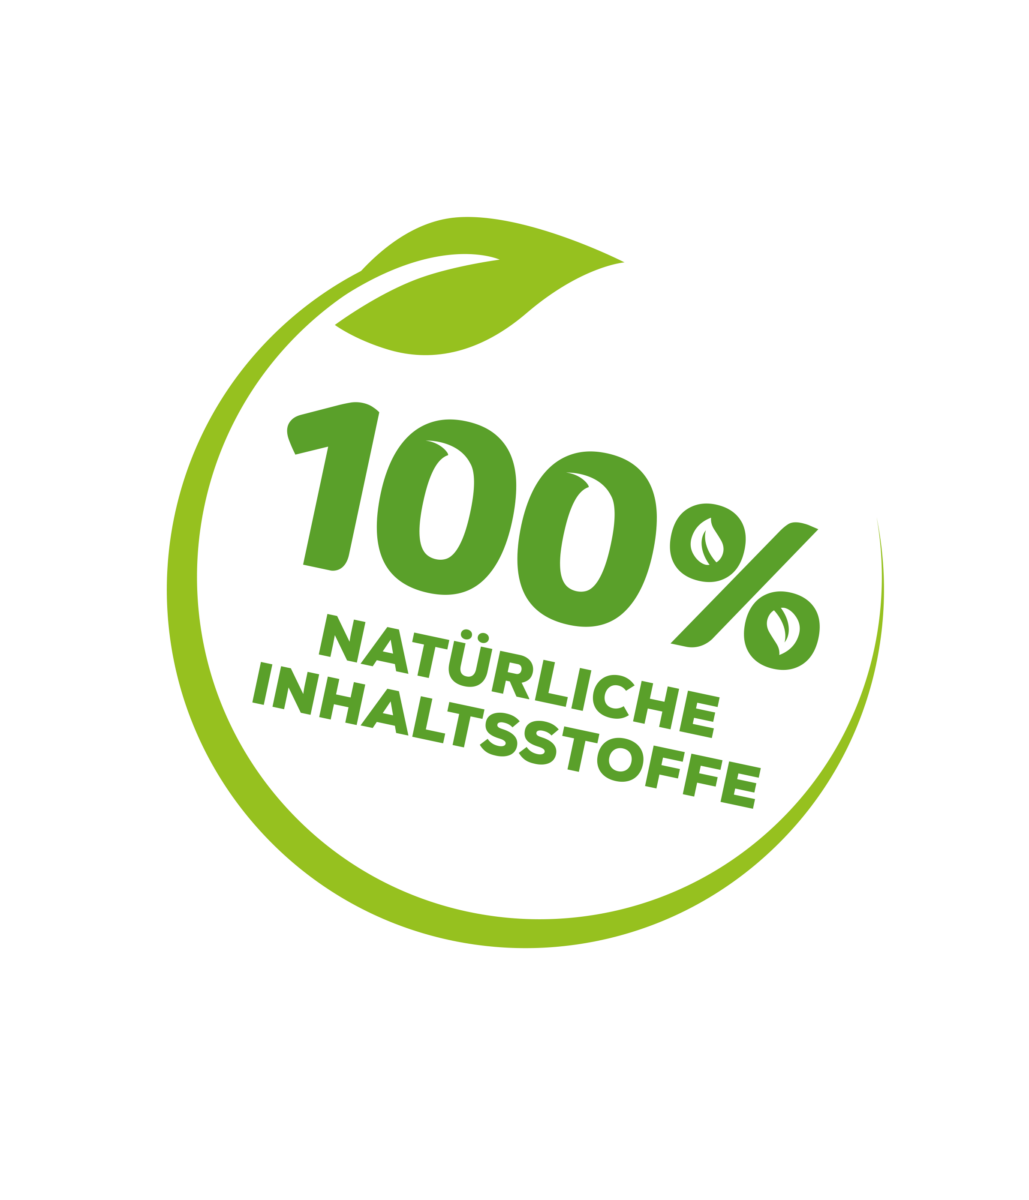 Solabiol Baum Anstrich 100 % natürliches Produkt 1.5 kg 